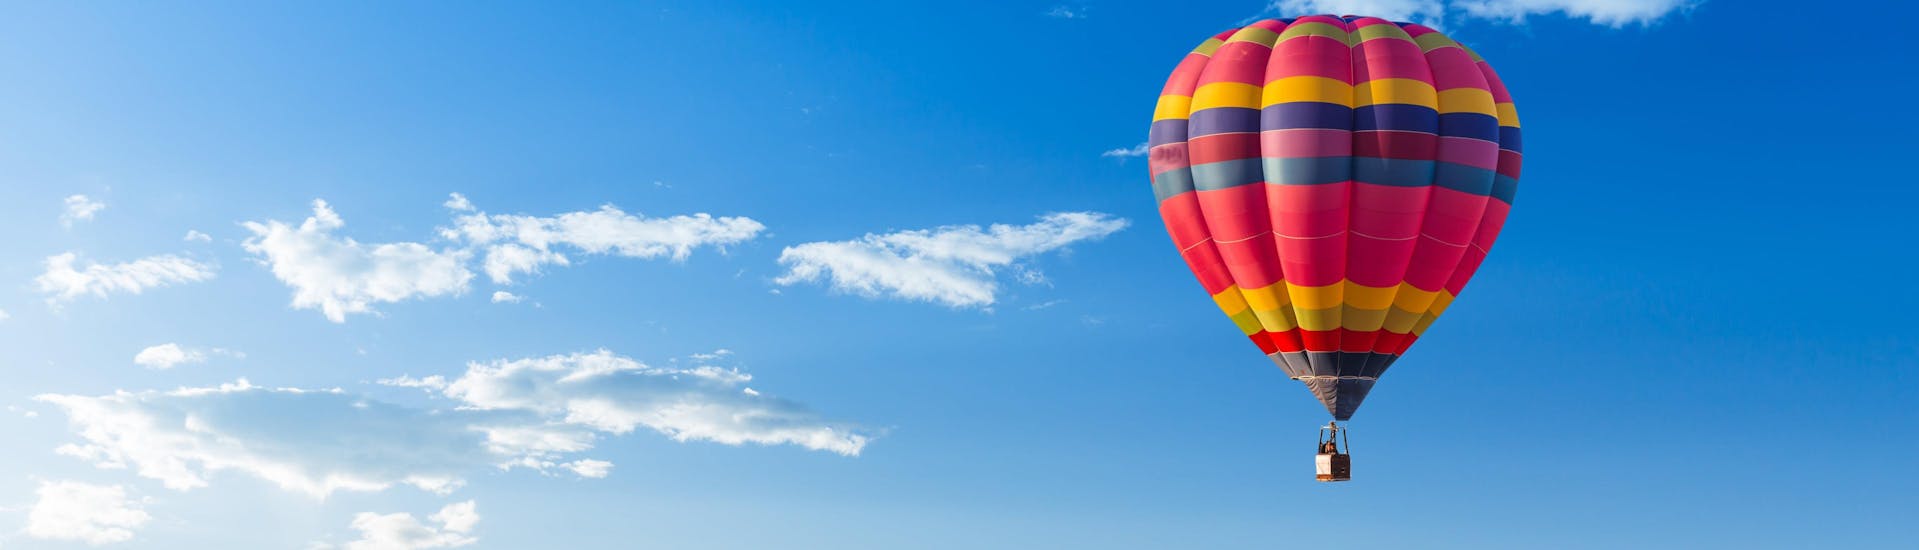 Un vol en montgolfière dans la destination célèbre pour la montgolfière Annecy.